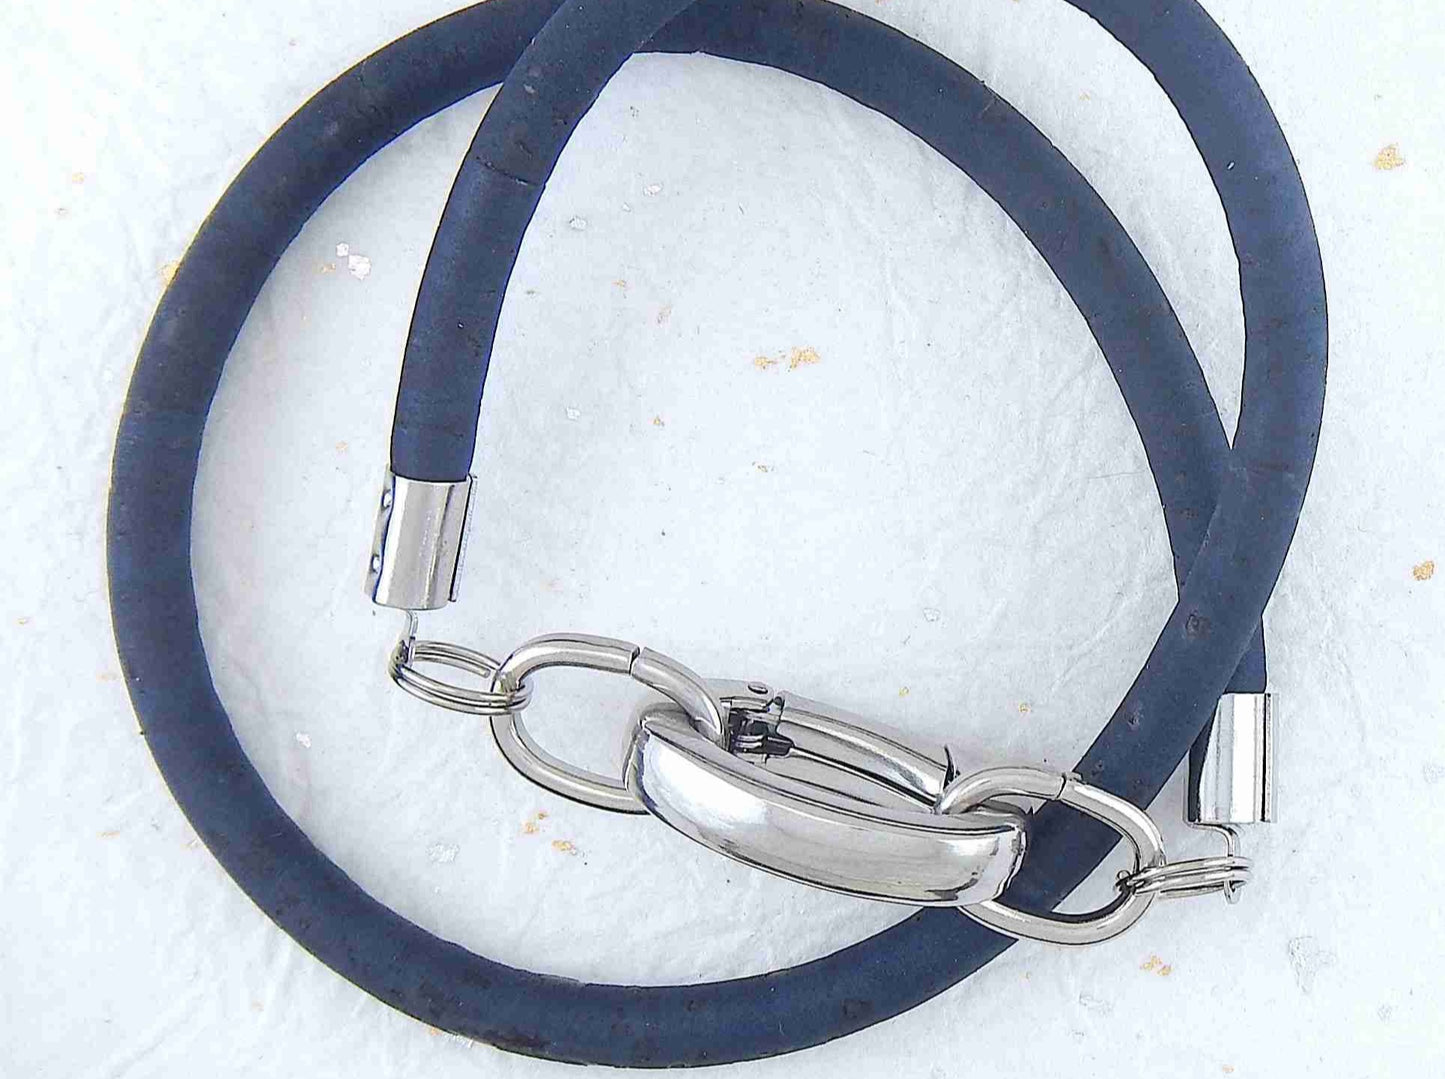 Bracelet 2 tours de liège rond 6mm avec fermoir ovale acier inoxydable en 5 couleurs froides (bleu ciel, bleu marine, turquoise-argent, turquoise-rouge, vert)